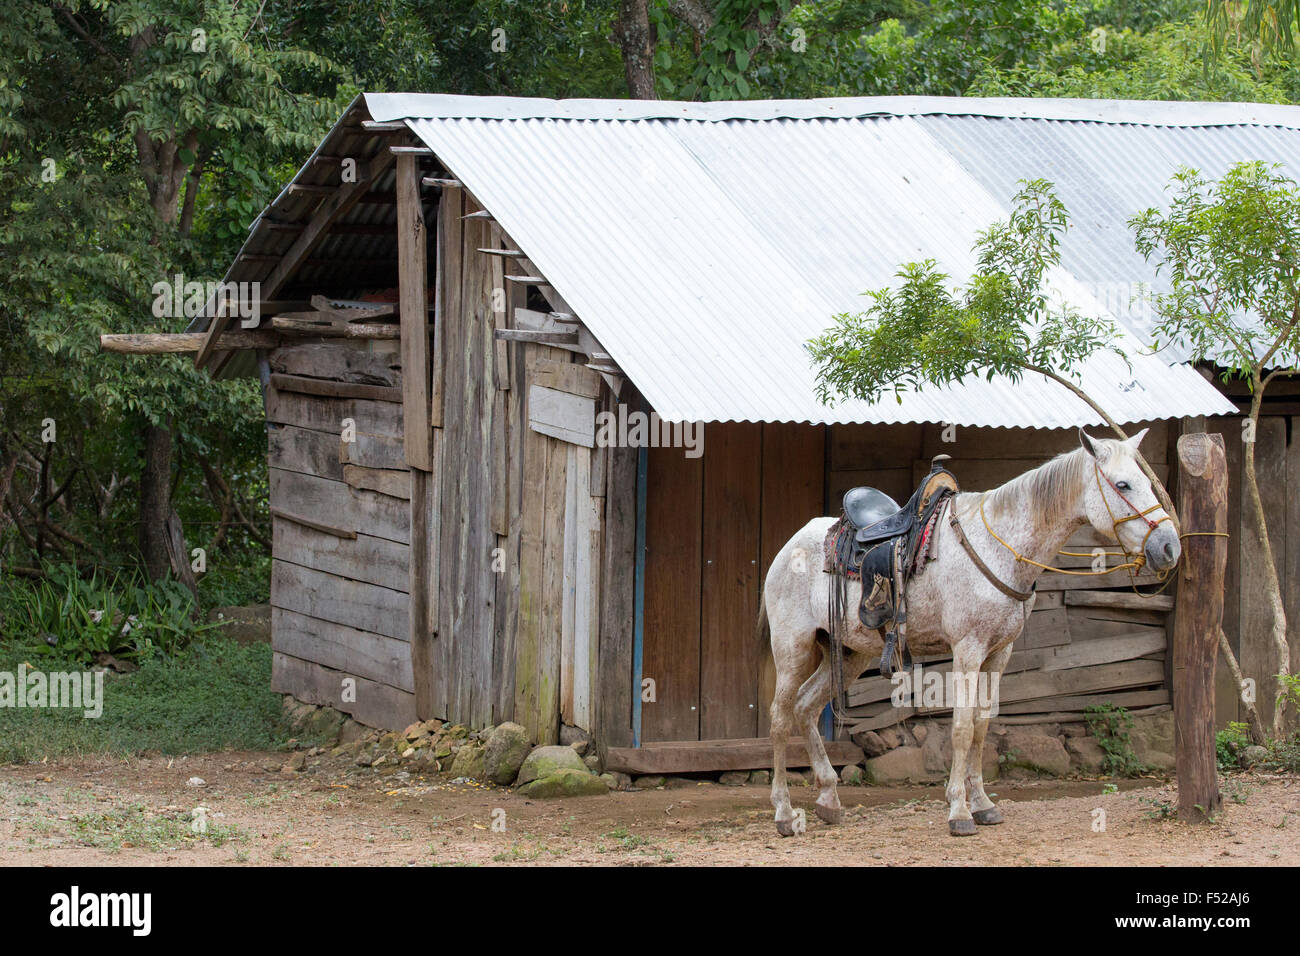 Rurale scena dal Nicaragua con un cavallo bianco in attesa del suo proprietario Foto Stock